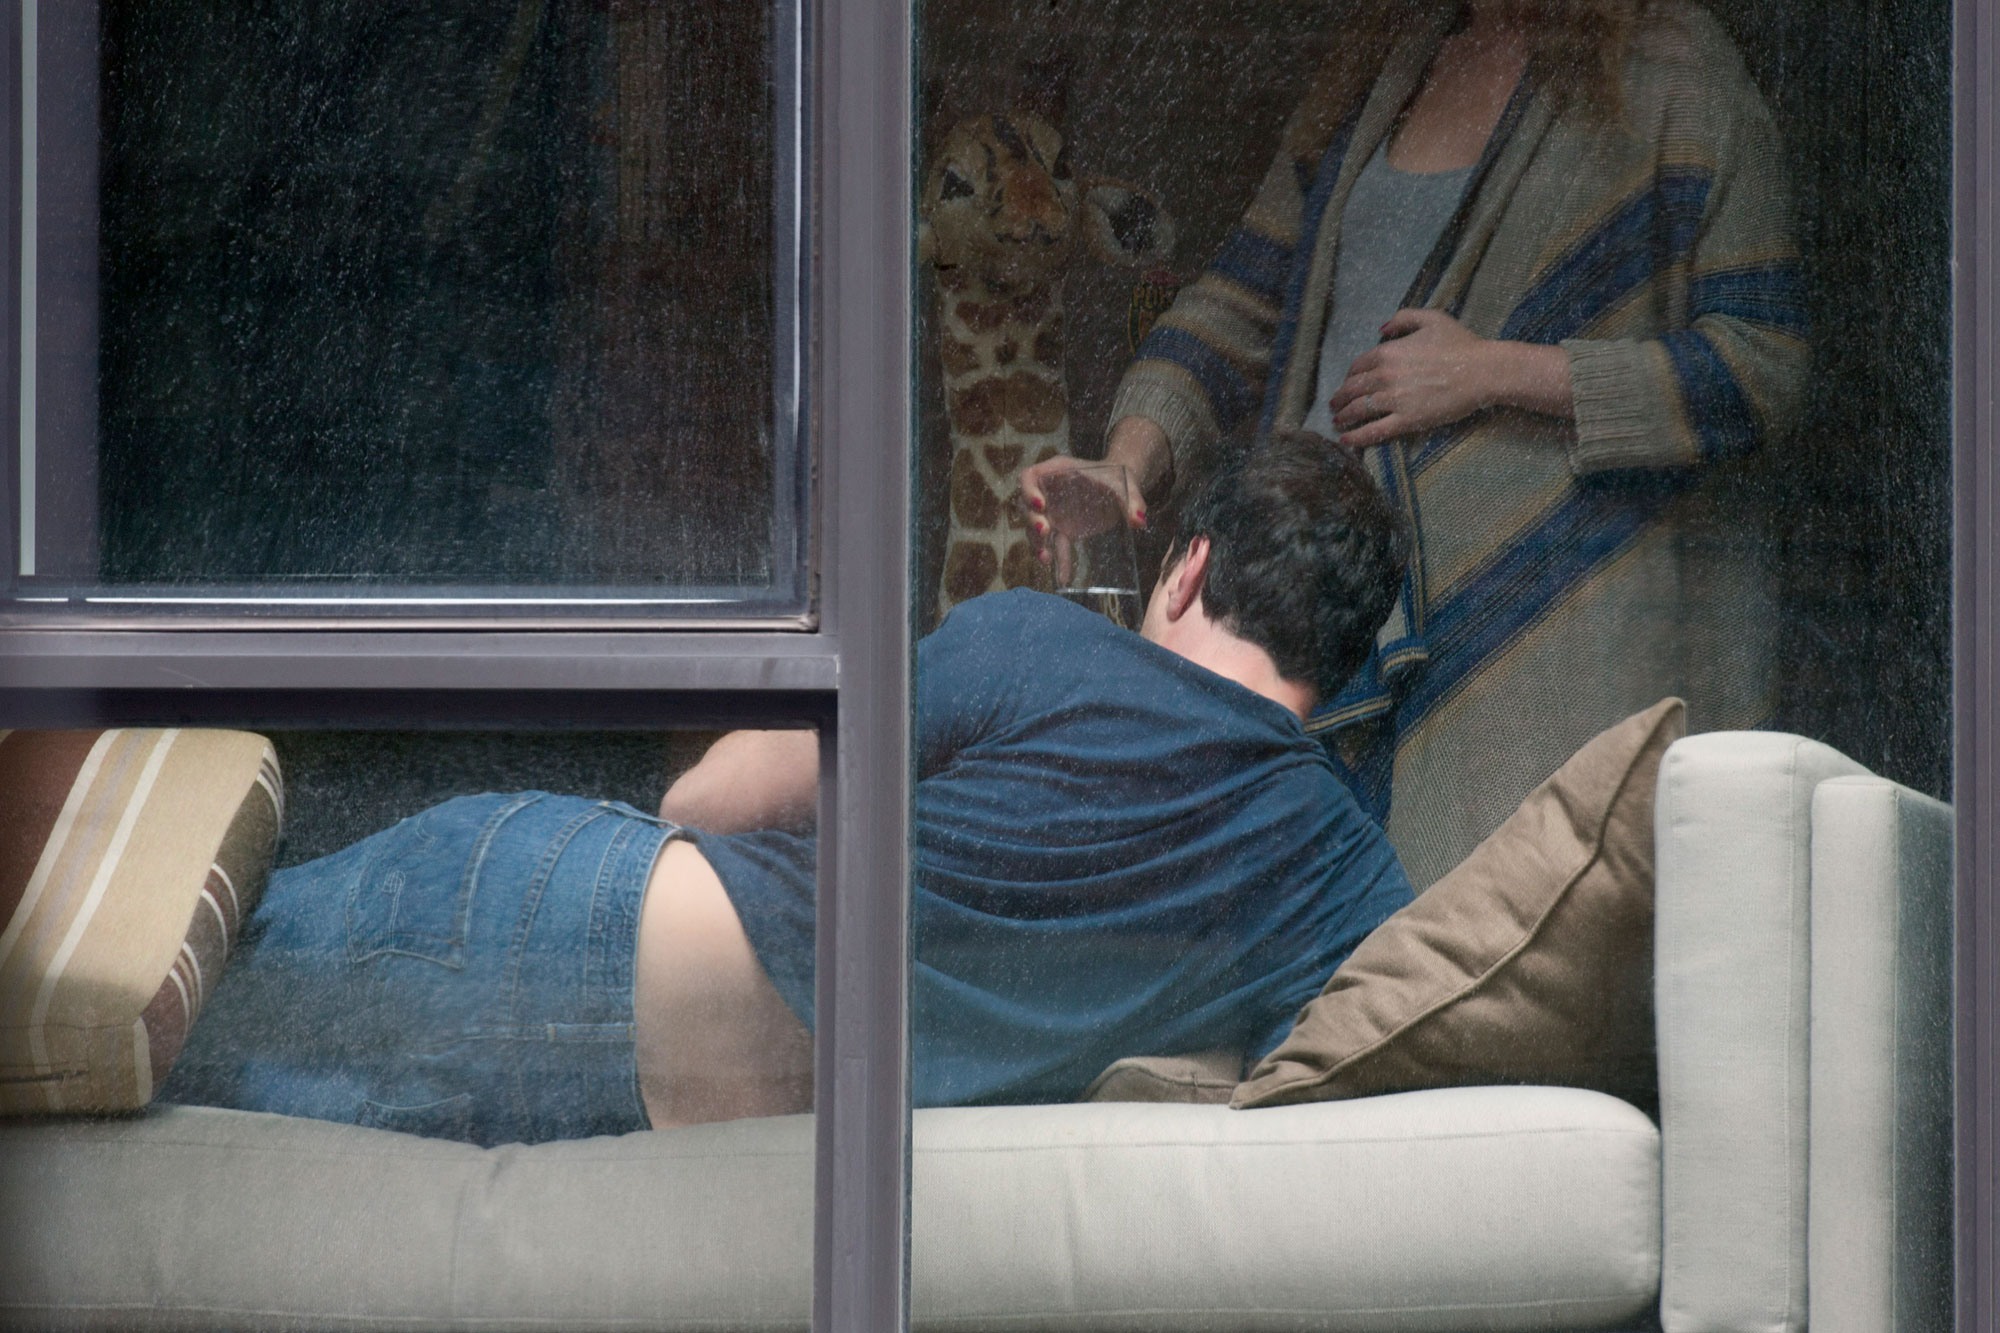 Скрытая камера напротив дивана засняла отсос девушки в белье своему мужчине